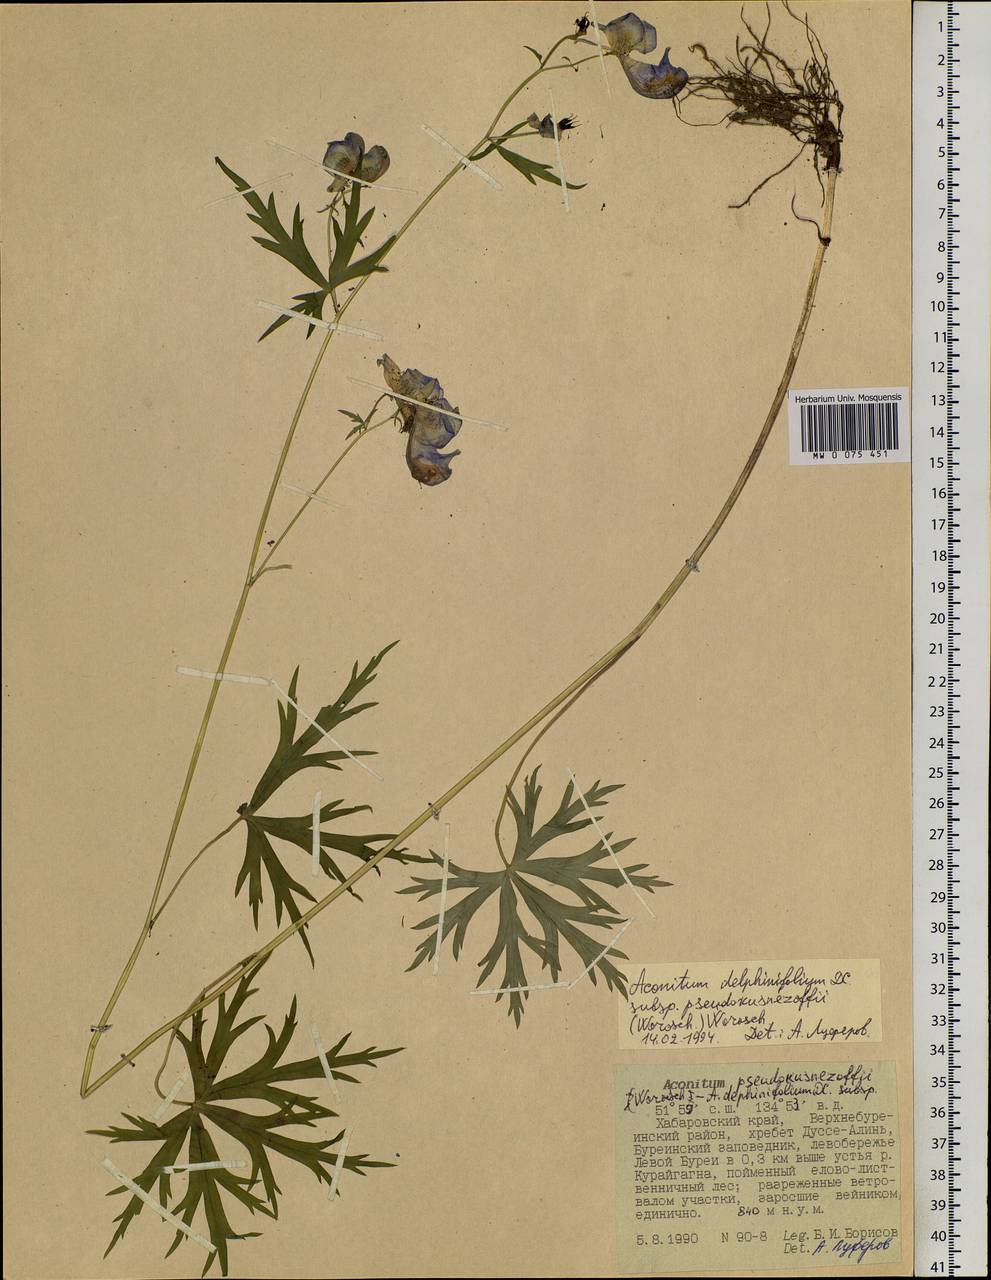 Aconitum delphinifolium subsp. pseudokusnezowii (Vorosch.) Vorosch., Siberia, Russian Far East (S6) (Russia)